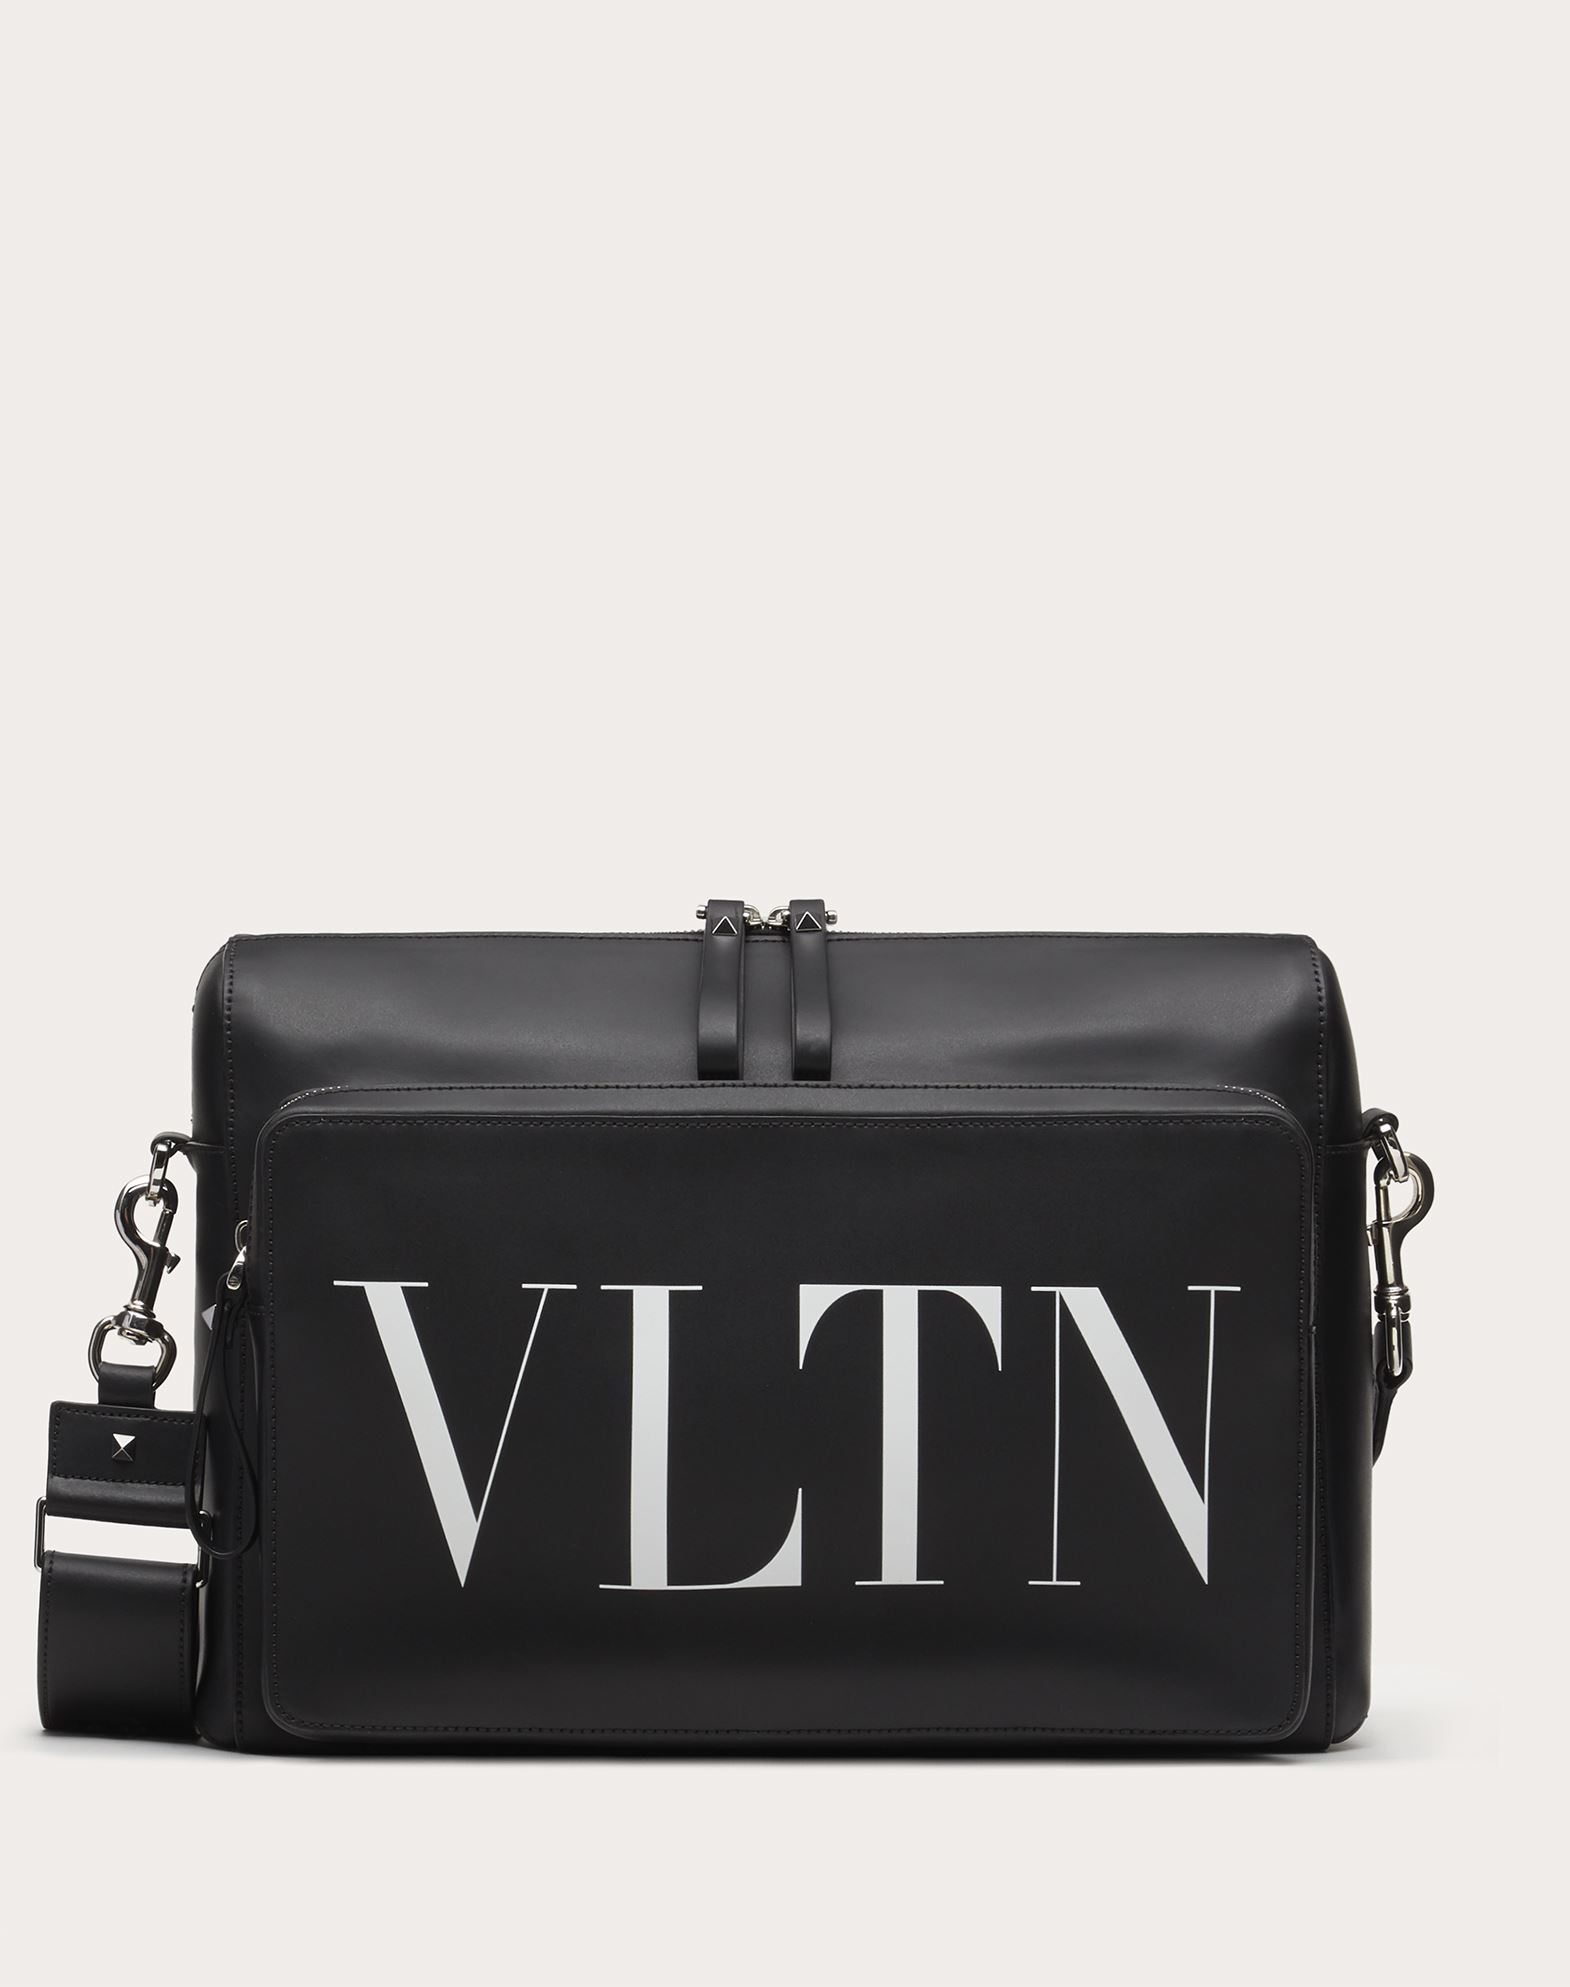 Leather Vltn Messenger Bag For Man Valentino Online Boutique